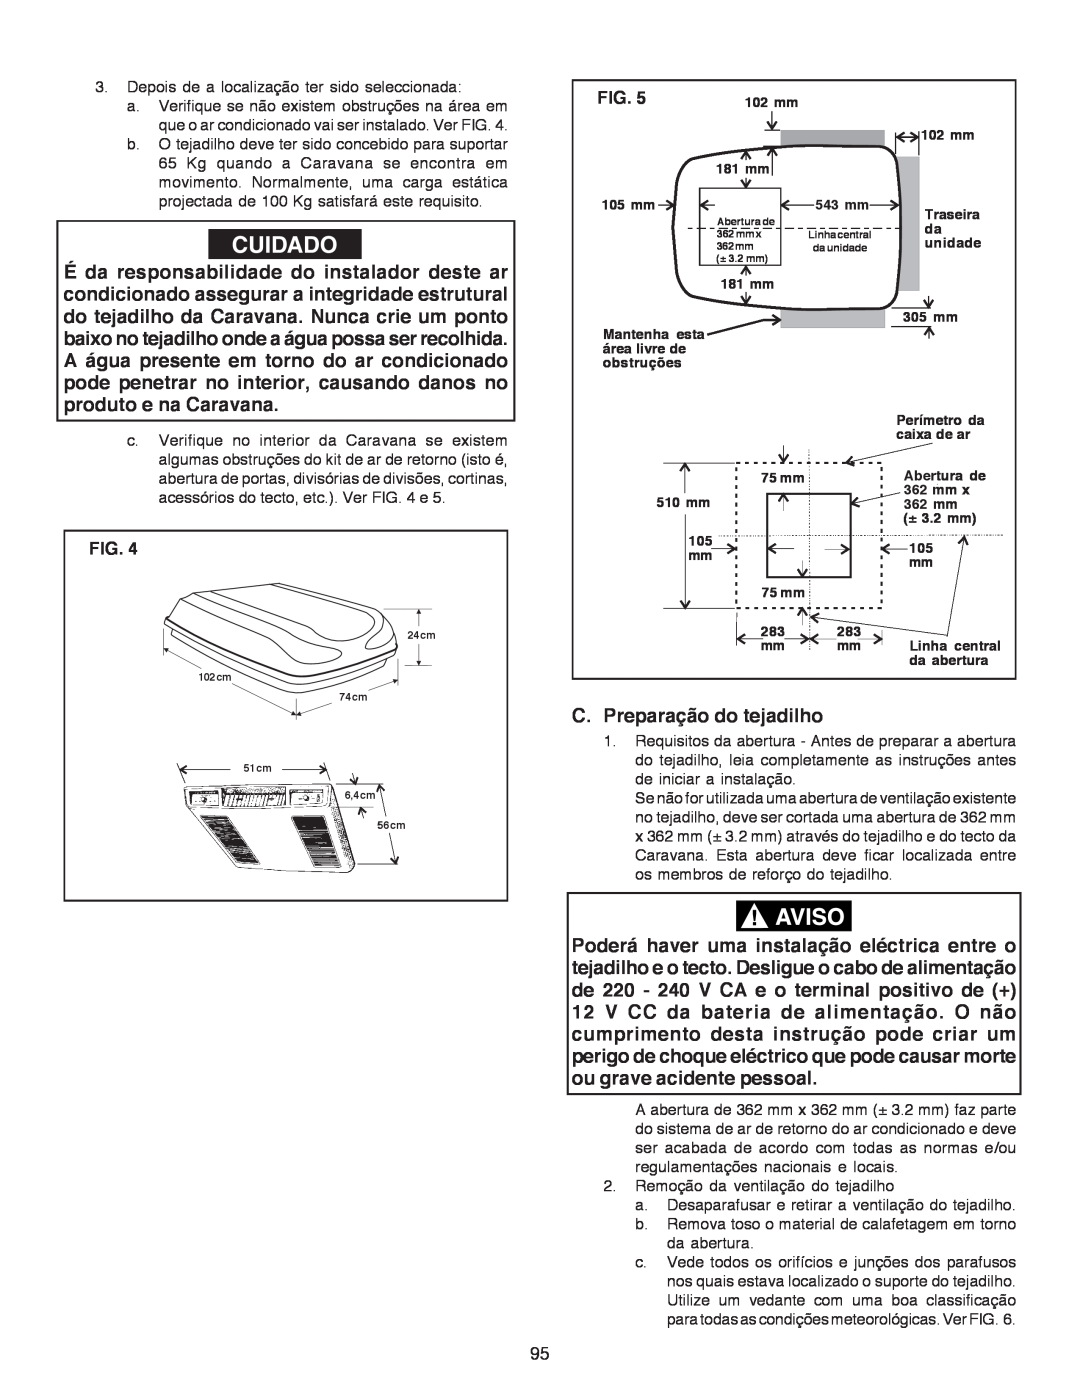 Dometic B3200 manual Cuidado, C. Preparação do tejadilho, Fig 